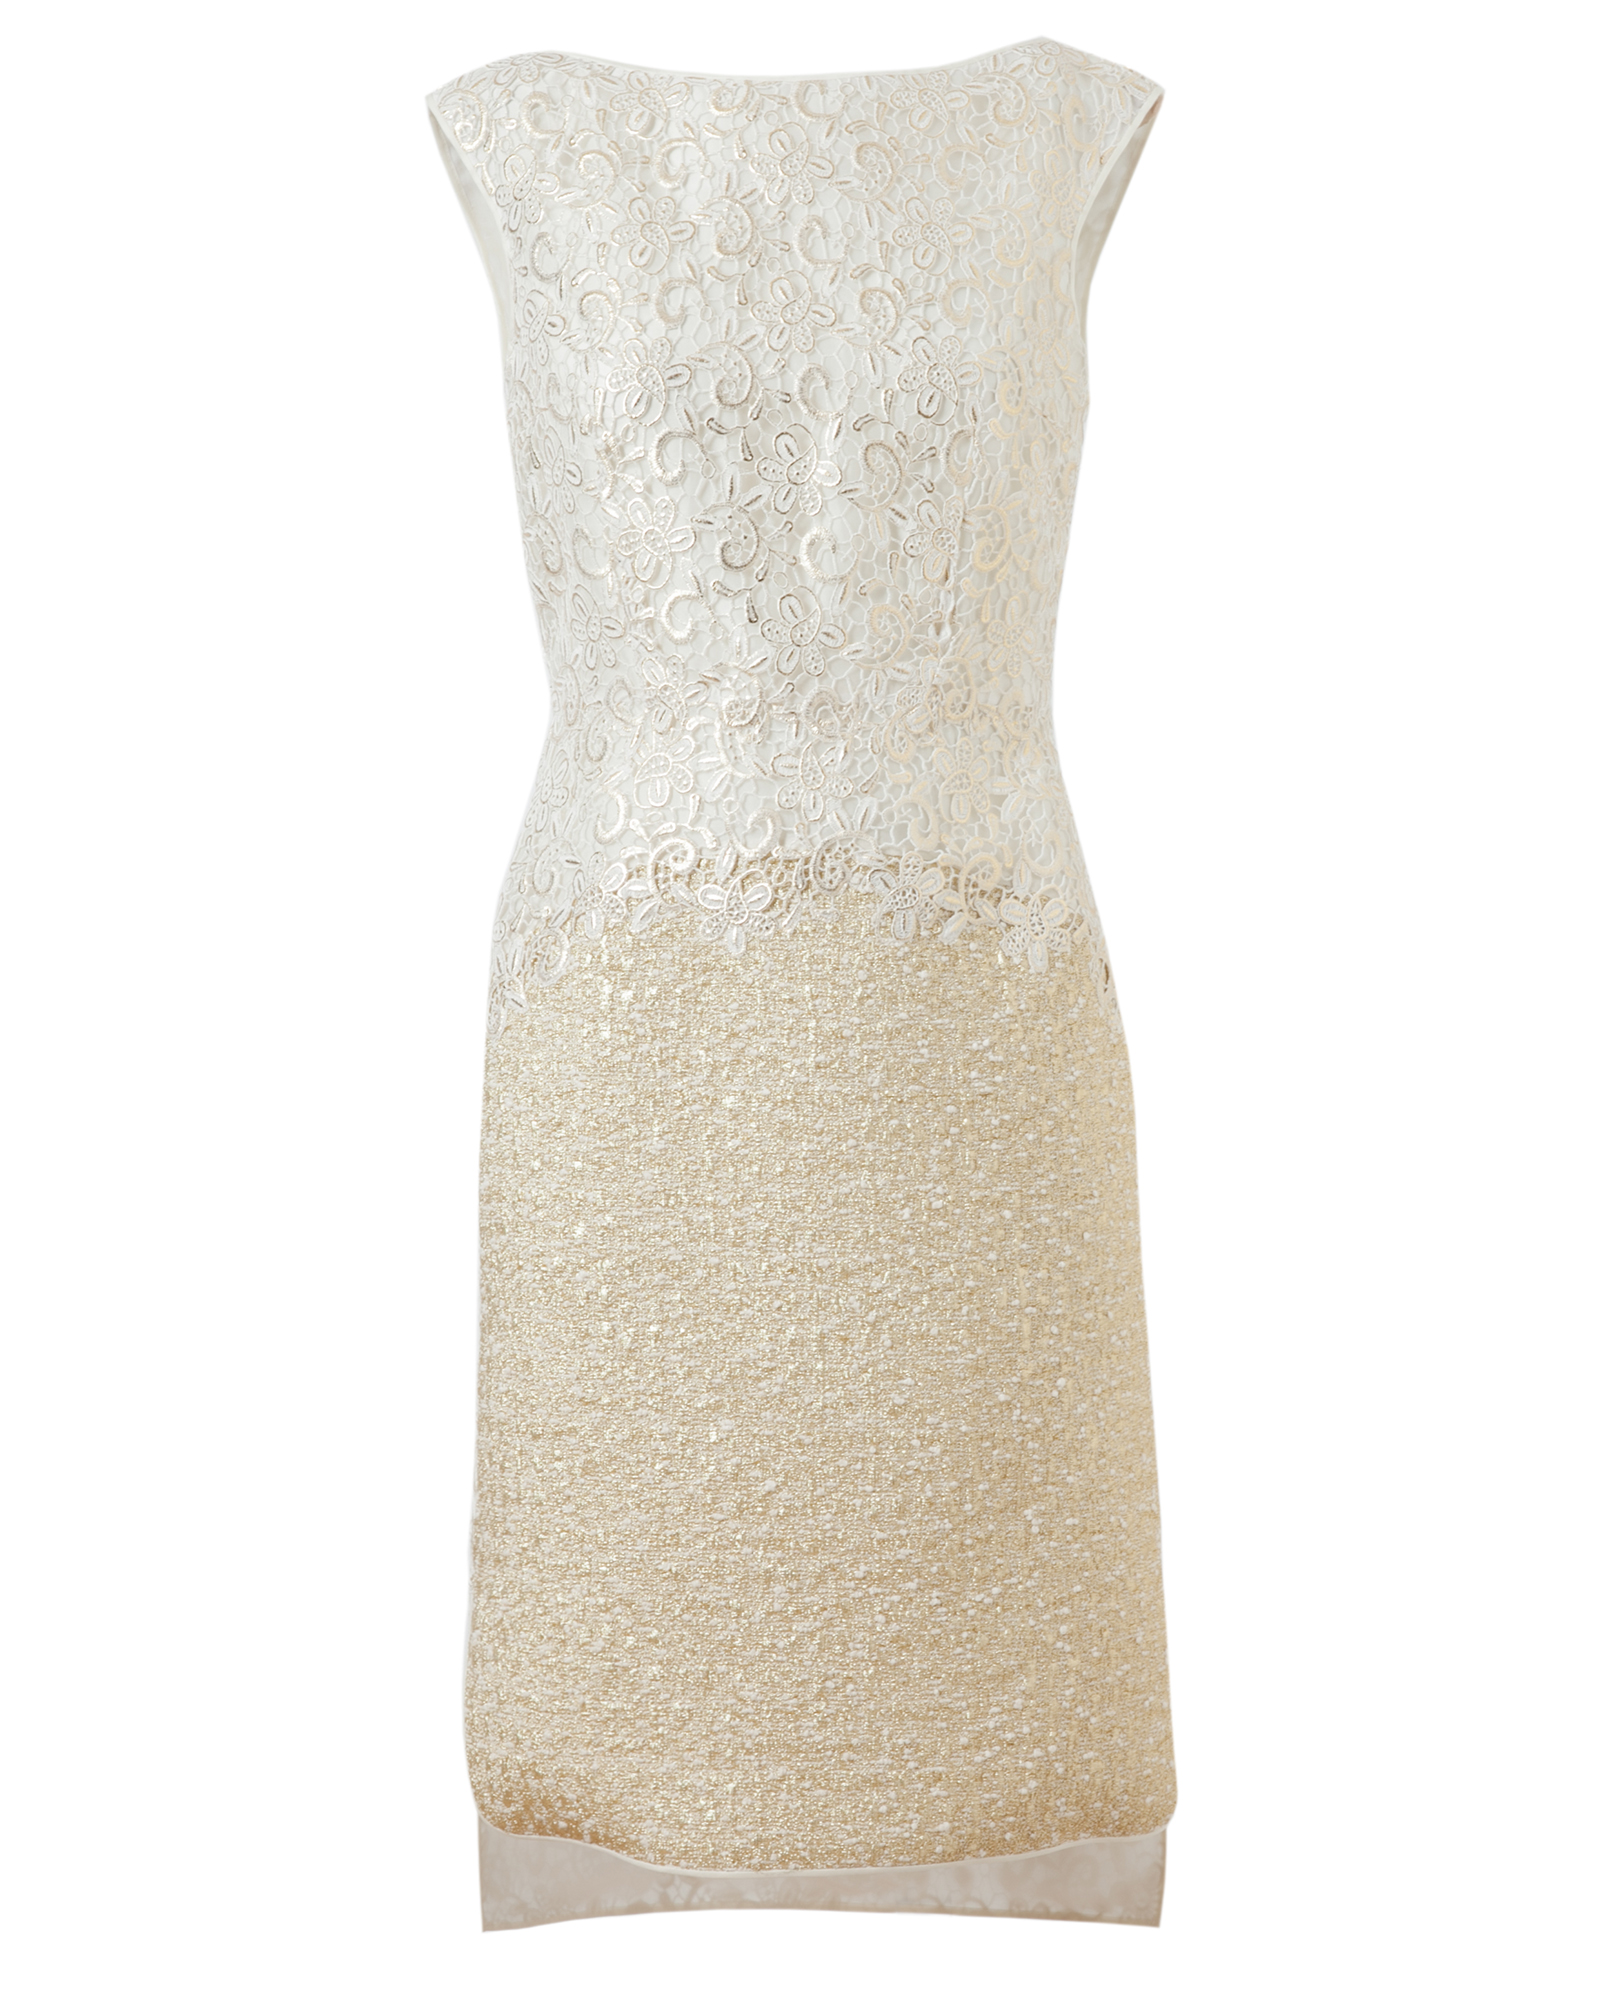 Giambattista valli Macrame Lace and Lurex Tweed Dress in Beige | Lyst